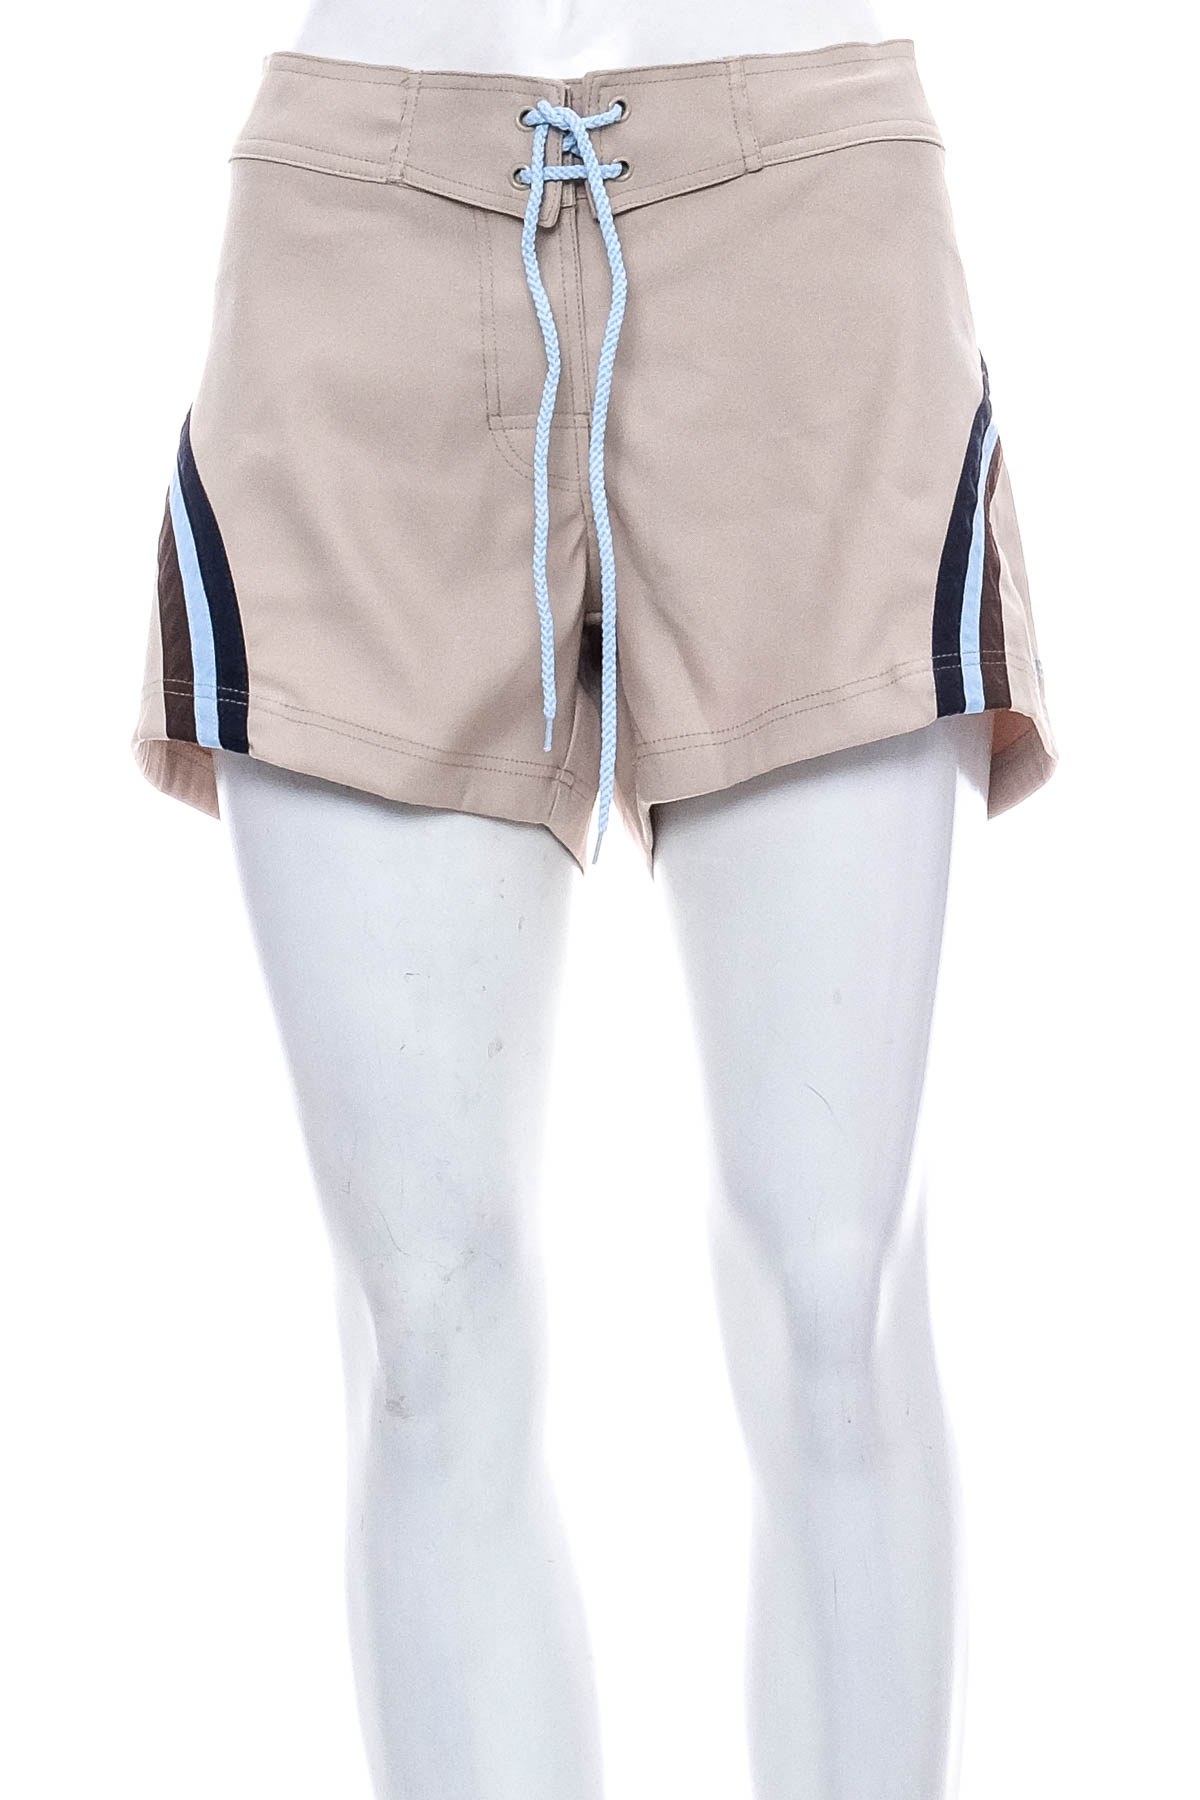 Women's shorts - Beco - 0